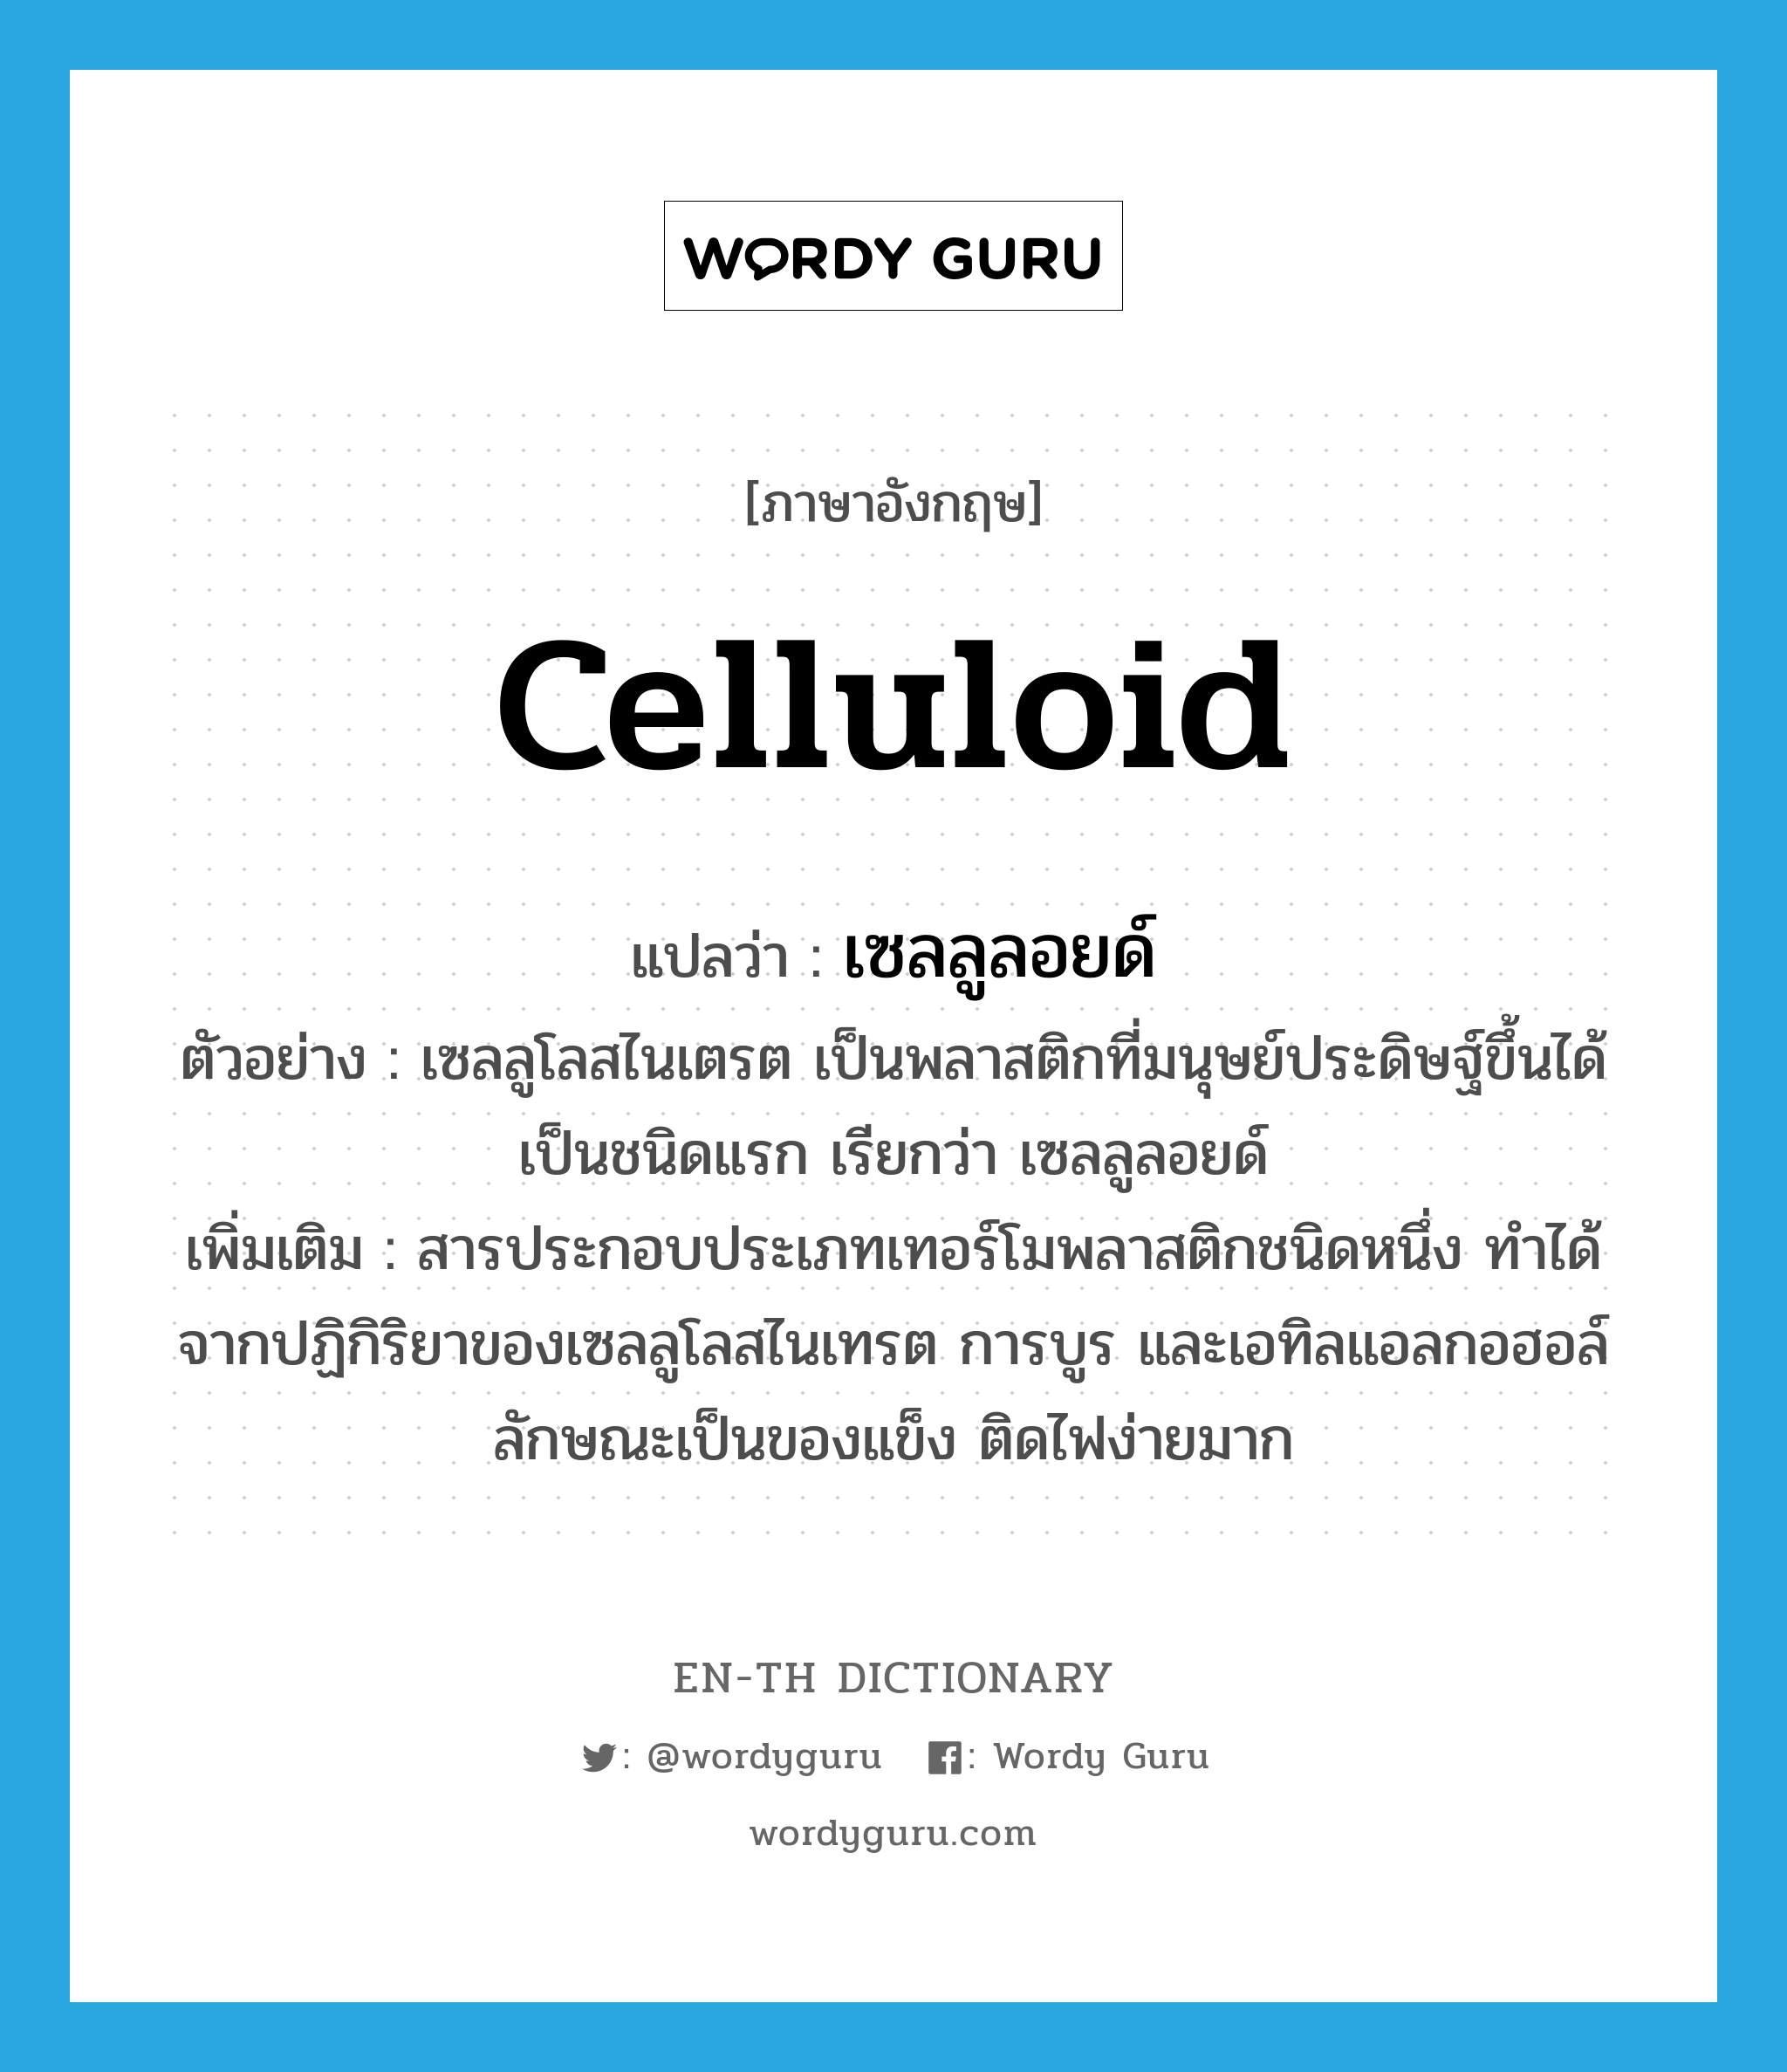 celluloid แปลว่า?, คำศัพท์ภาษาอังกฤษ celluloid แปลว่า เซลลูลอยด์ ประเภท N ตัวอย่าง เซลลูโลสไนเตรต เป็นพลาสติกที่มนุษย์ประดิษฐ์ขึ้นได้เป็นชนิดแรก เรียกว่า เซลลูลอยด์ เพิ่มเติม สารประกอบประเภทเทอร์โมพลาสติกชนิดหนึ่ง ทำได้จากปฏิกิริยาของเซลลูโลสไนเทรต การบูร และเอทิลแอลกอฮอล์ ลักษณะเป็นของแข็ง ติดไฟง่ายมาก หมวด N